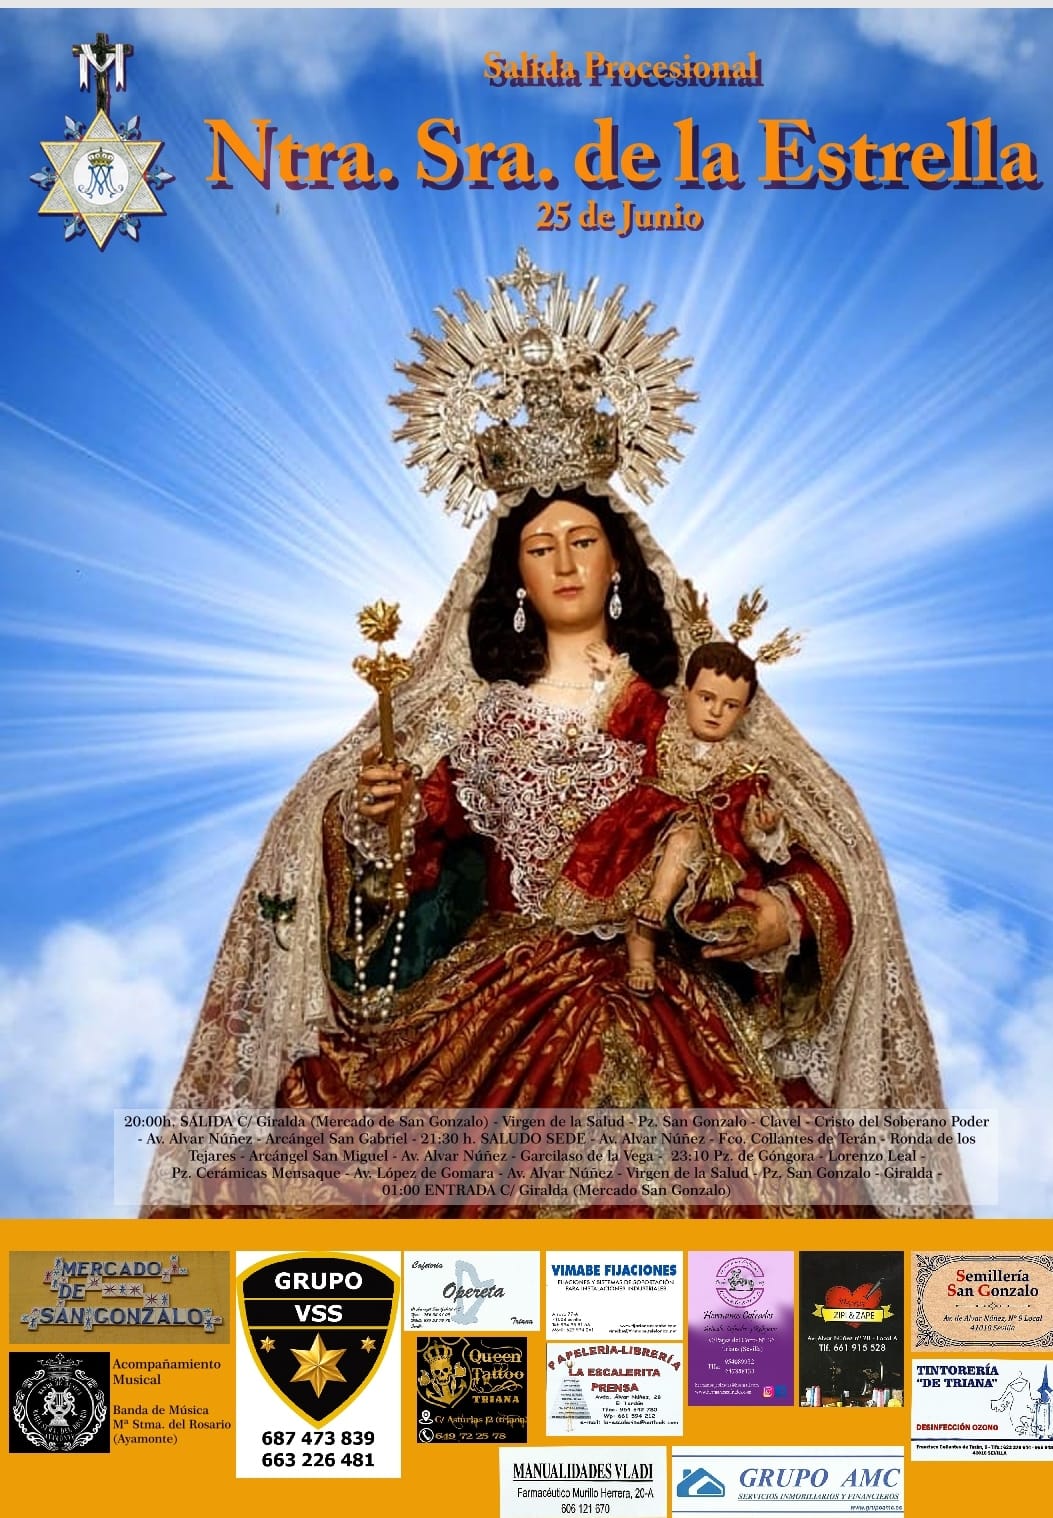 El próximo día 25 de junio procesionará por Triana Ntra. Señora de la Estrella Gloriosa